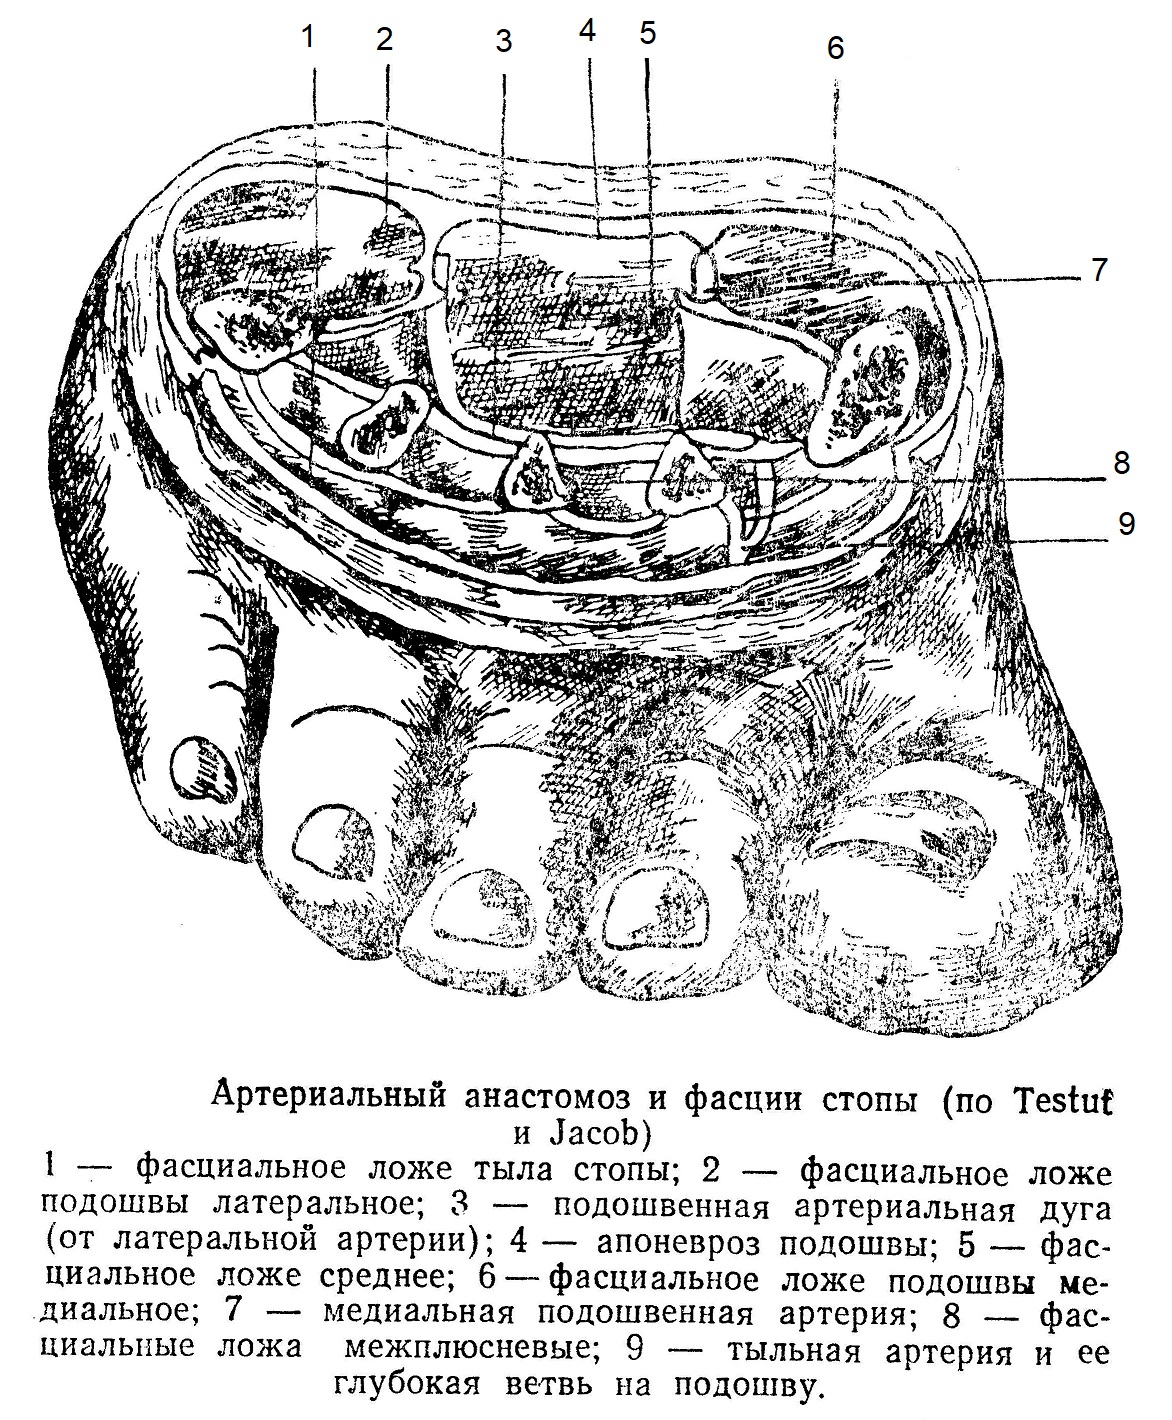 Артериальный анастомоз и фасции стопы (по Testuf и Jacob)